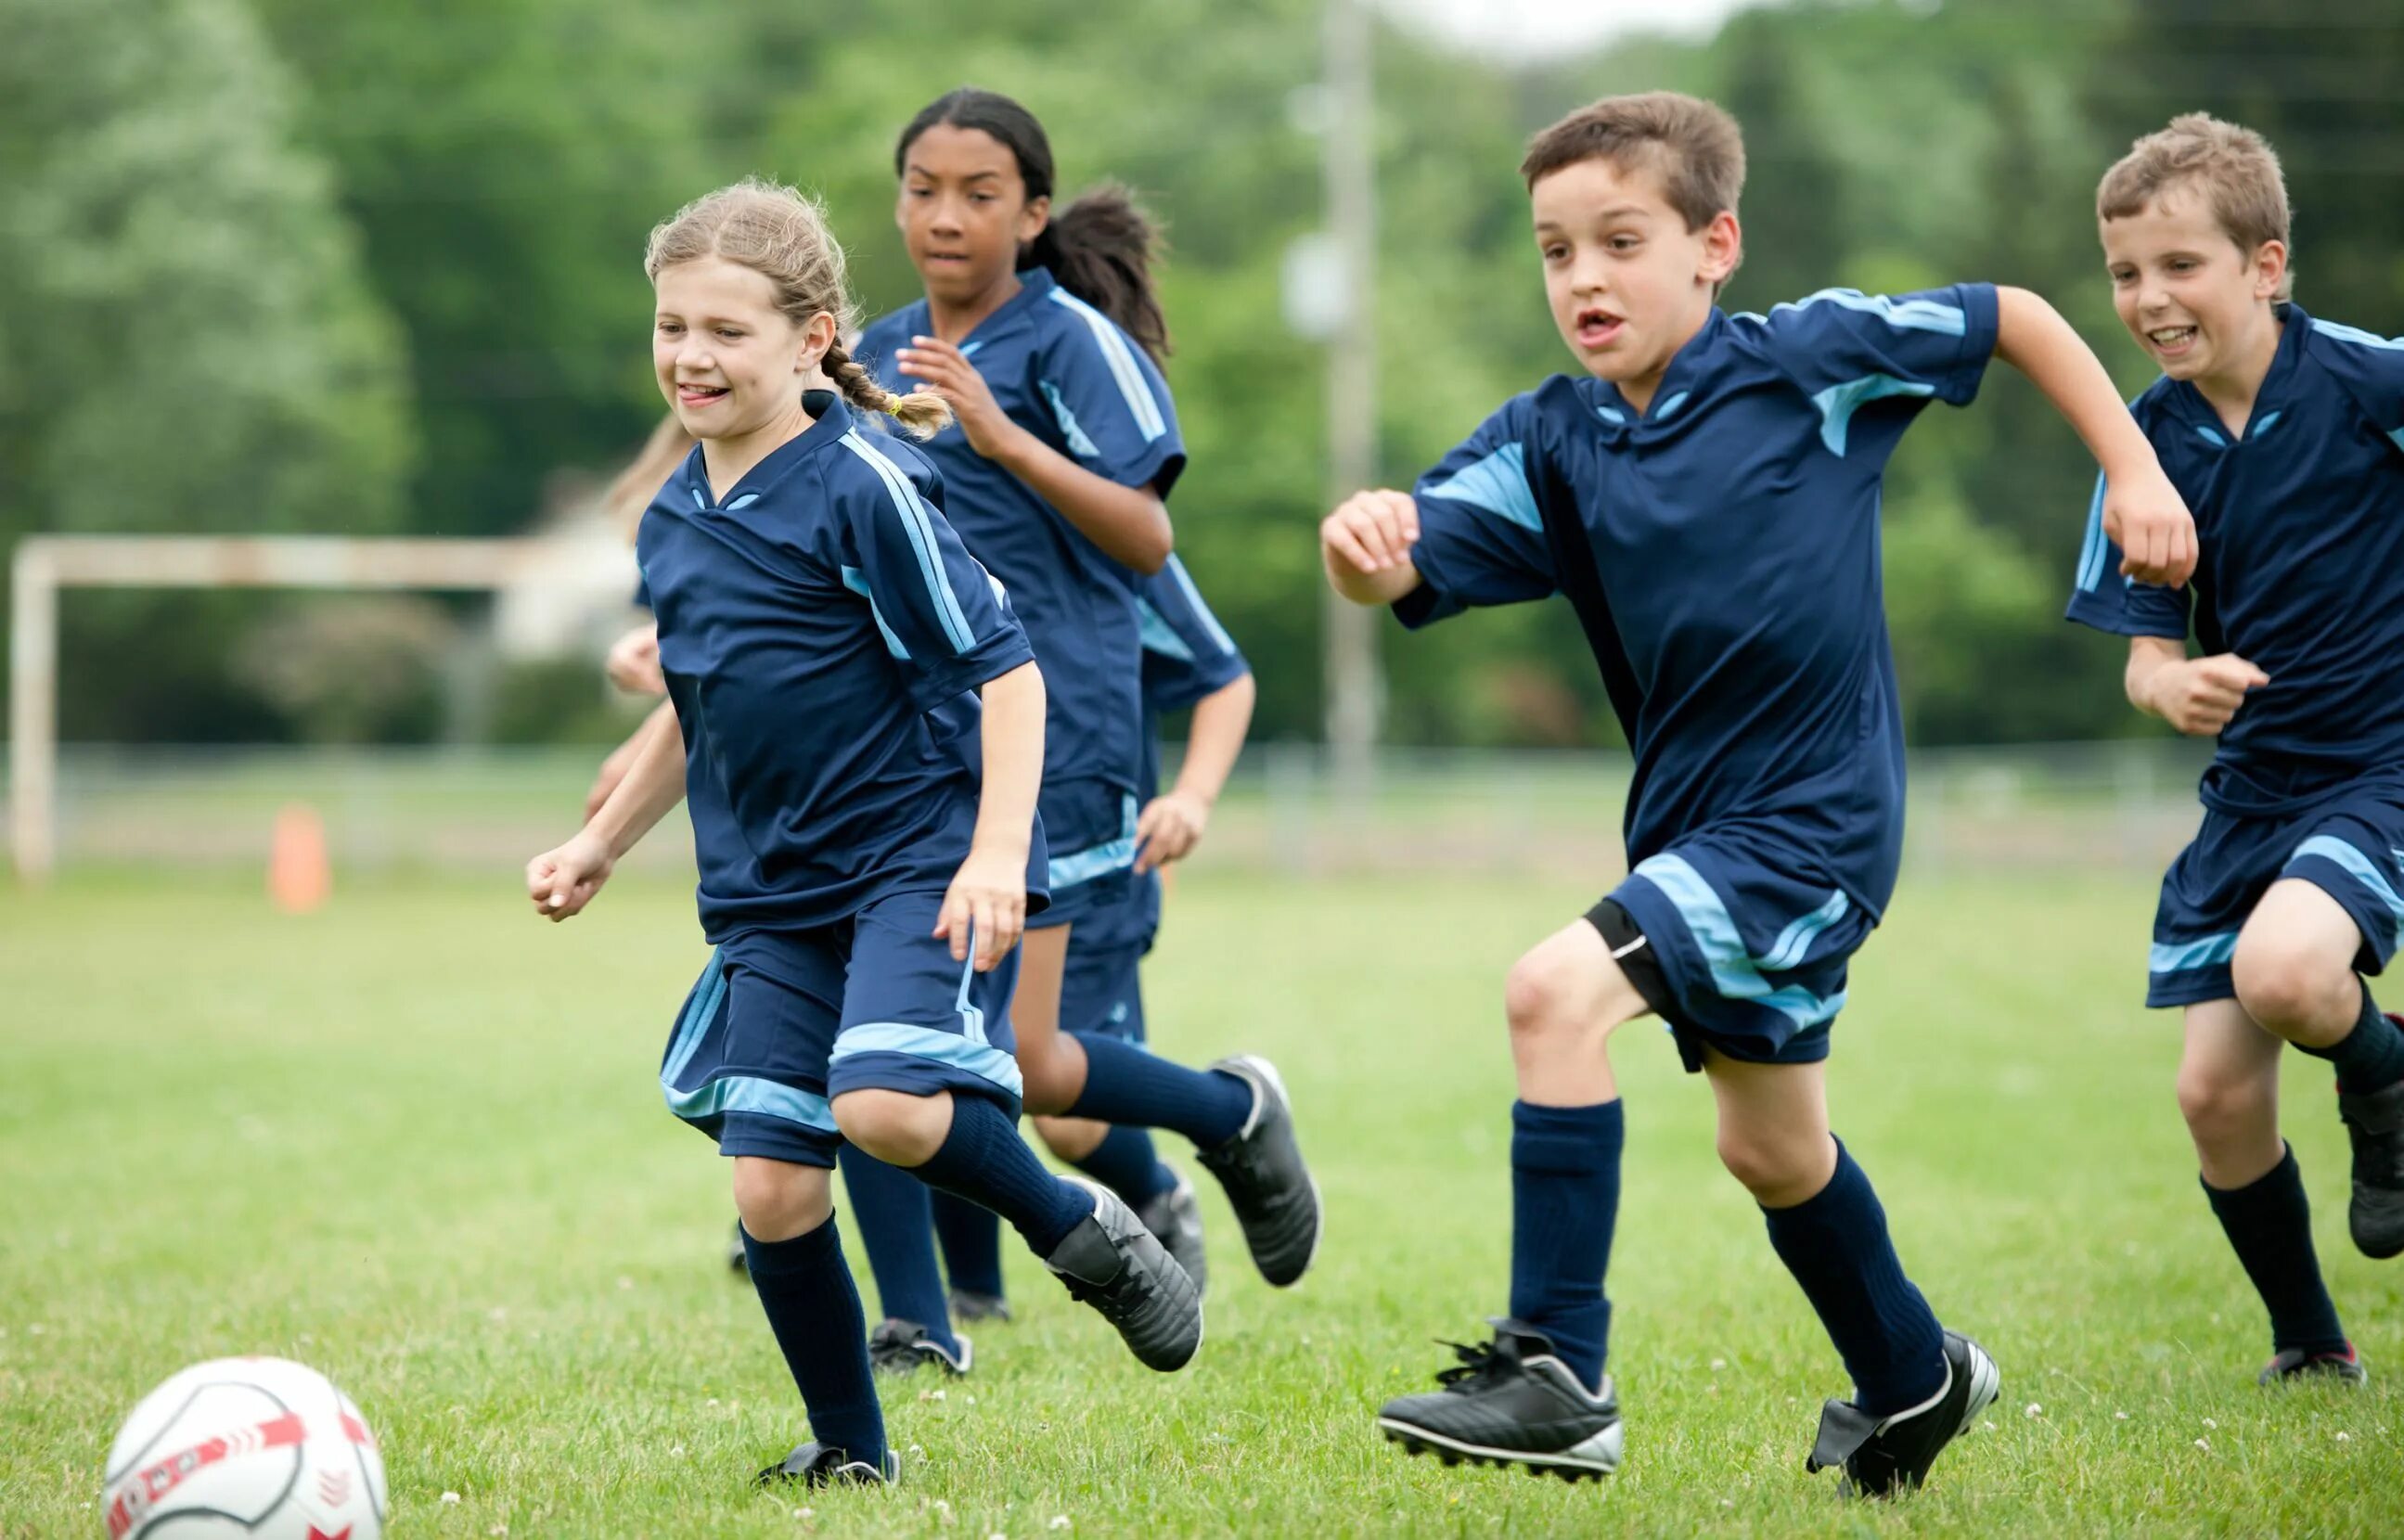 Футбол дети. Дети играющие в футбол. Спорт футбол дети. Футбол для школьников. I can playing football